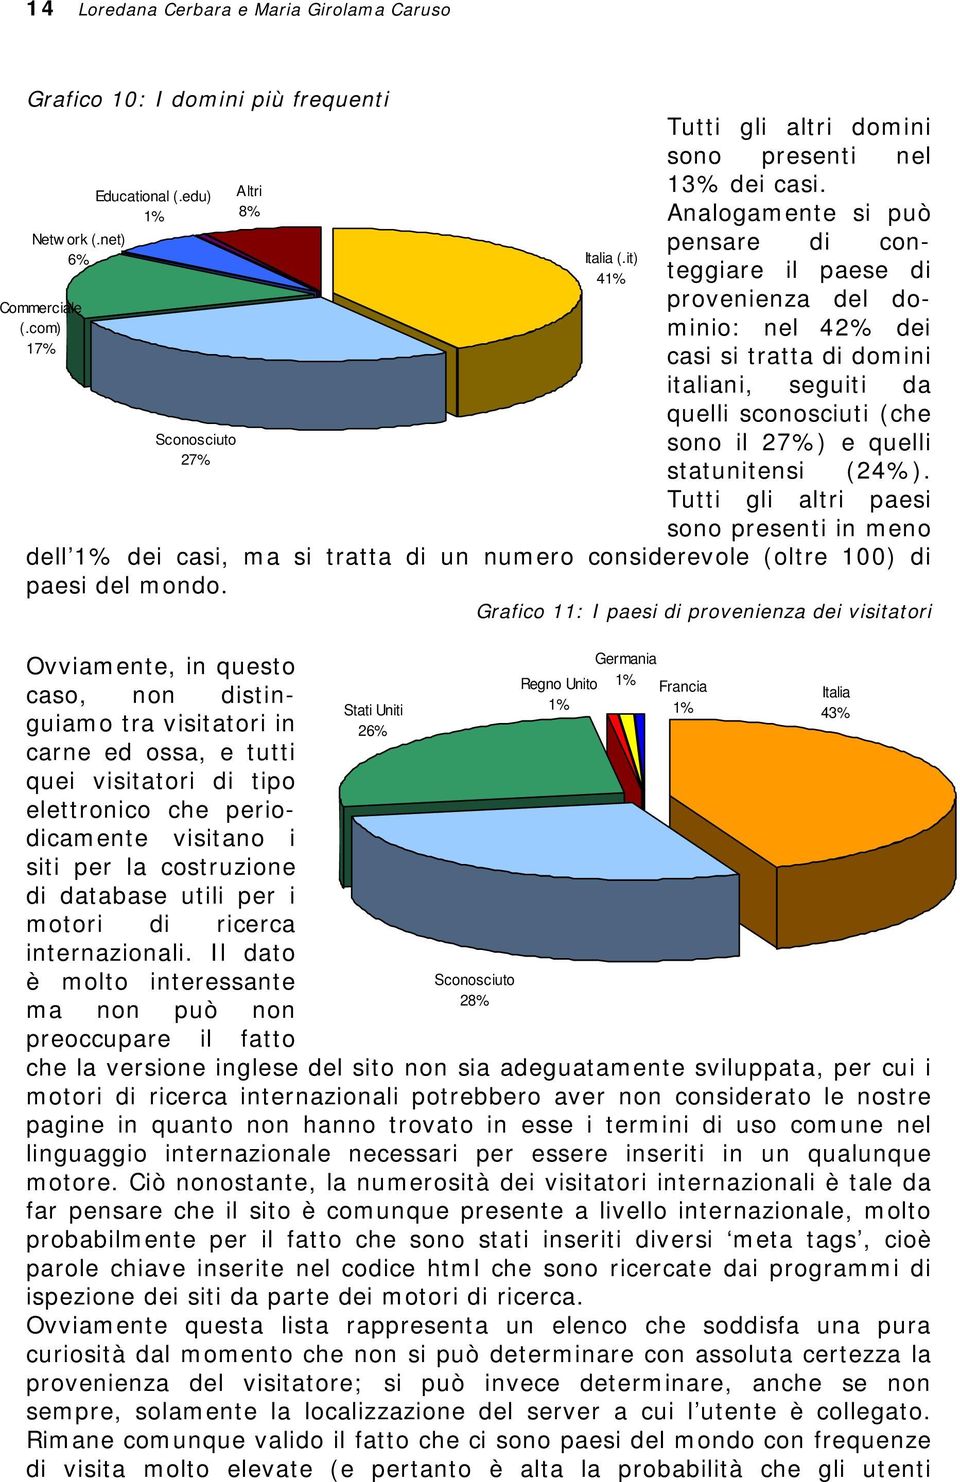 Analogamente si può pensare di conteggiare il paese di provenienza del dominio: nel 42% dei casi si tratta di domini italiani, seguiti da quelli sconosciuti (che sono il 27%) e quelli statunitensi